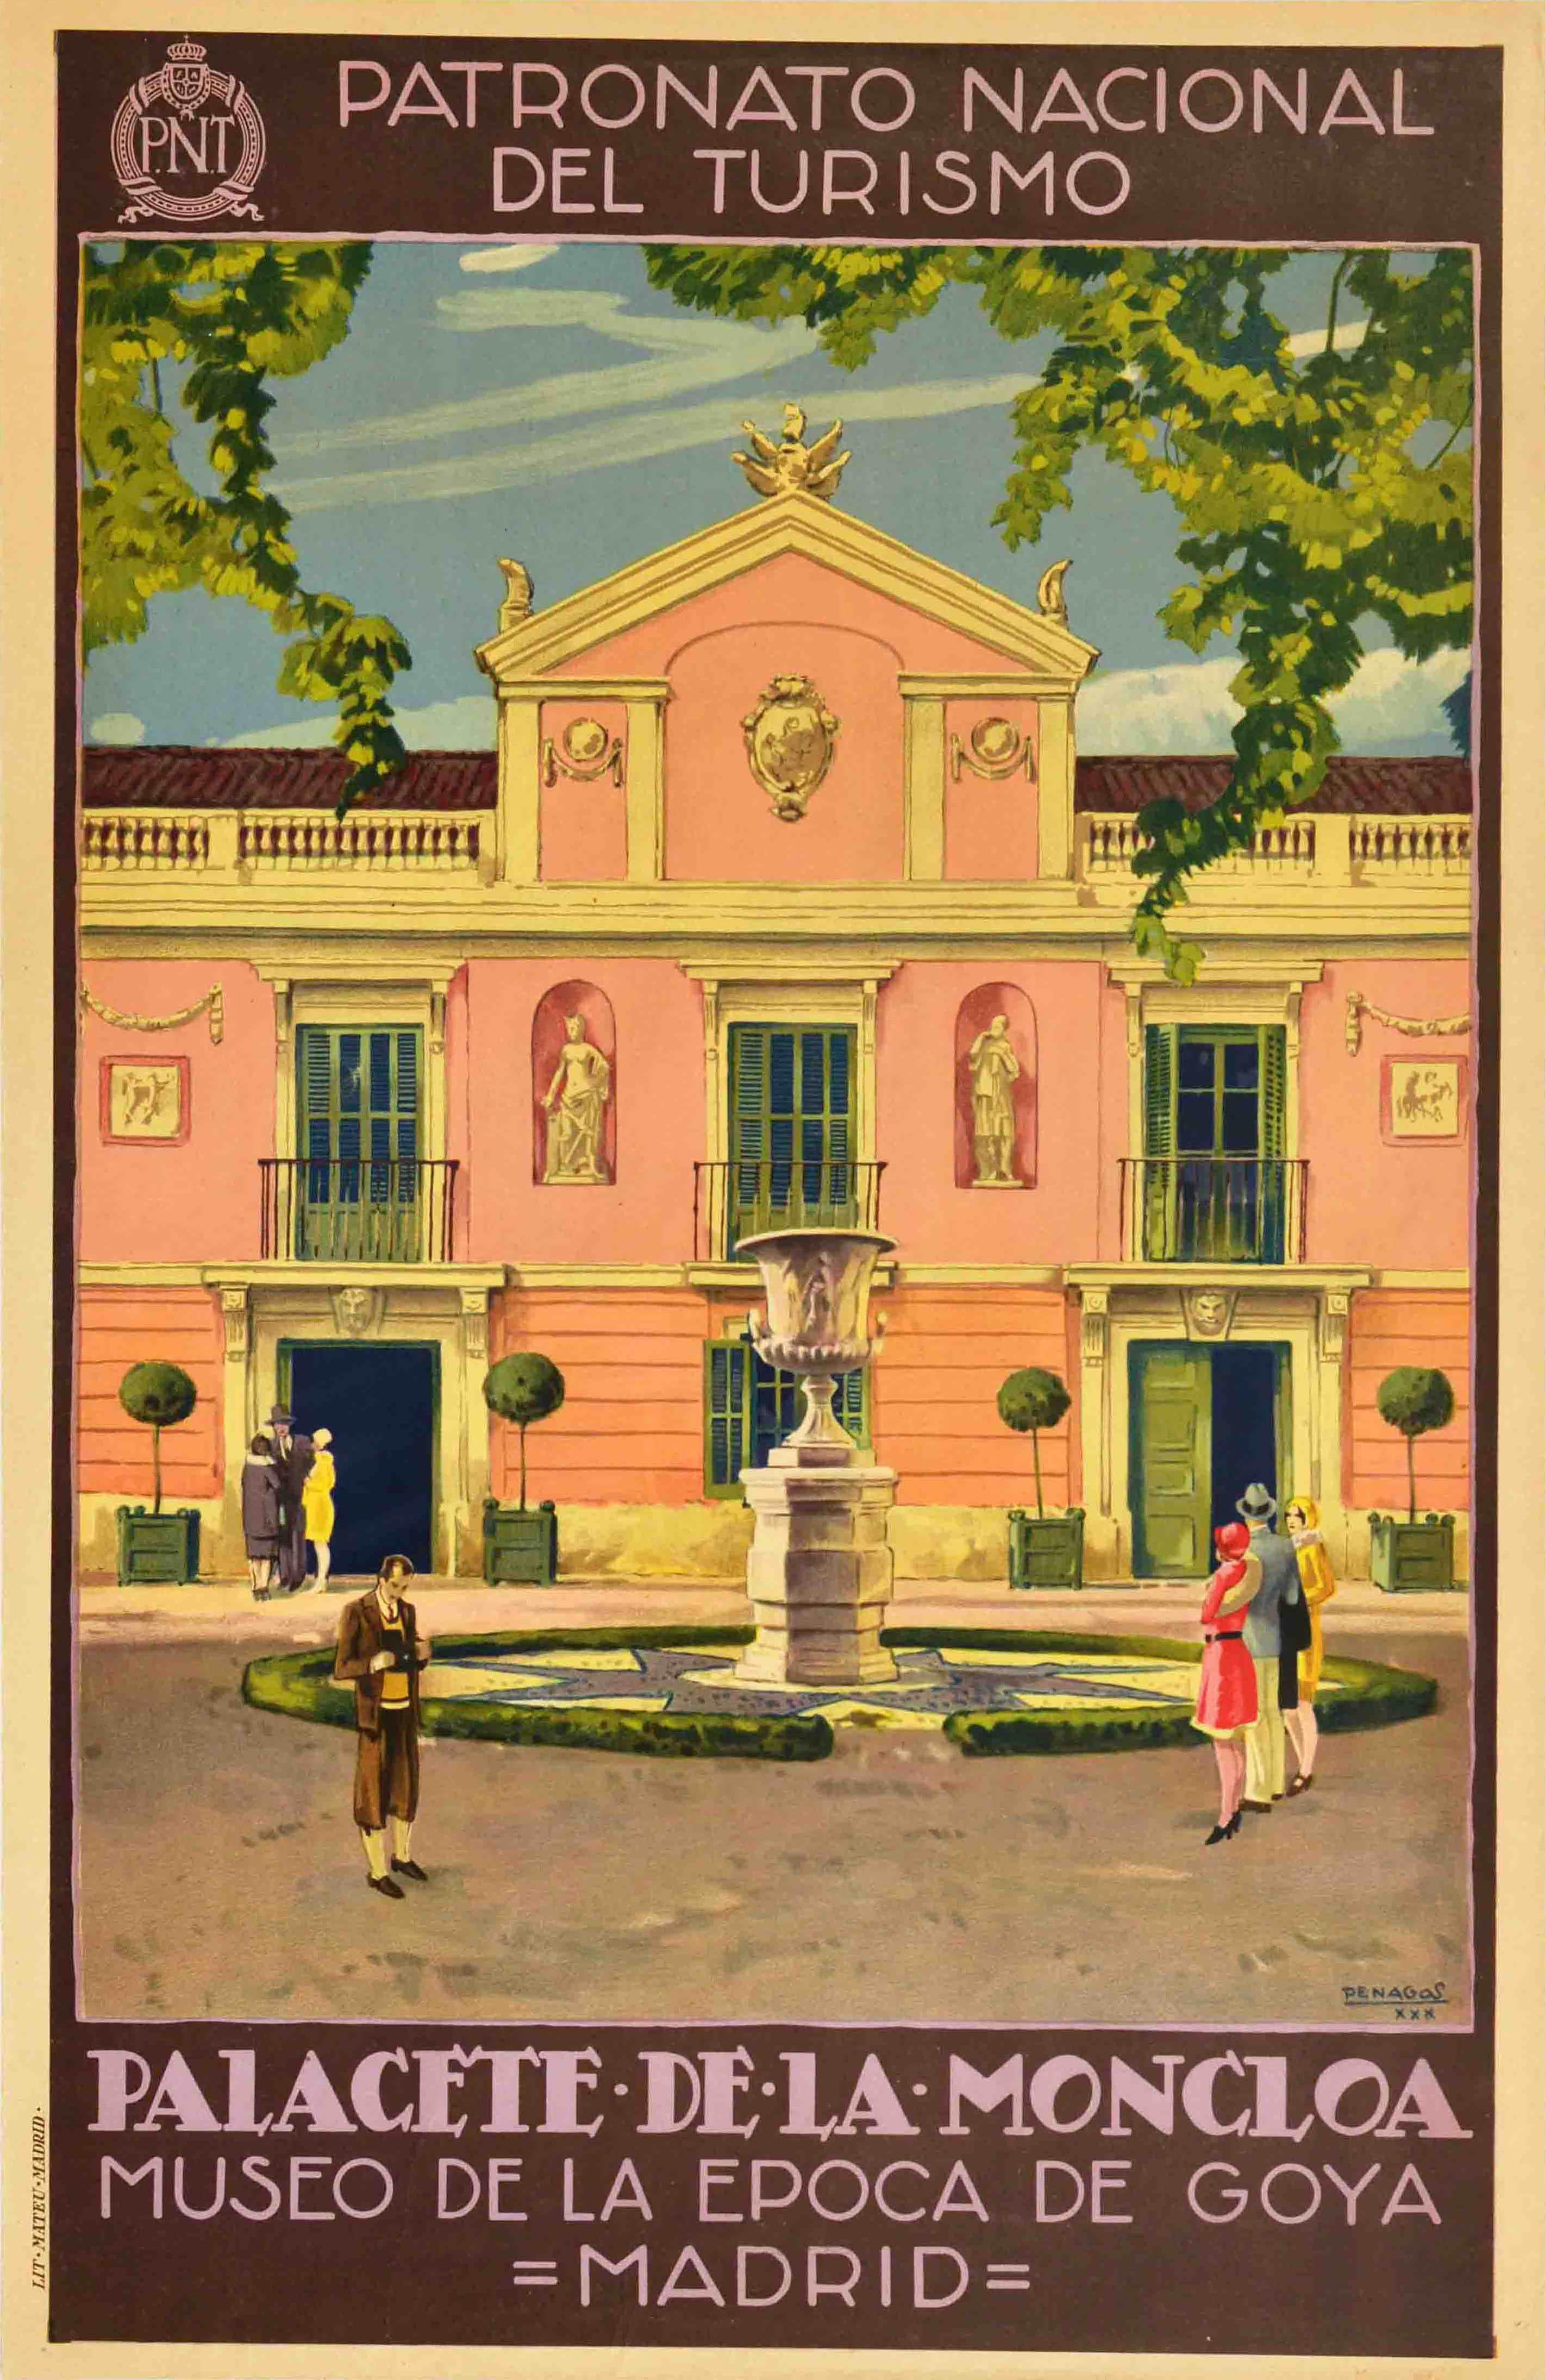 Print Unknown - Affiche de voyage vintage d'origine Palacete De La Moncloa Palace PNT, Madrid, Espagne